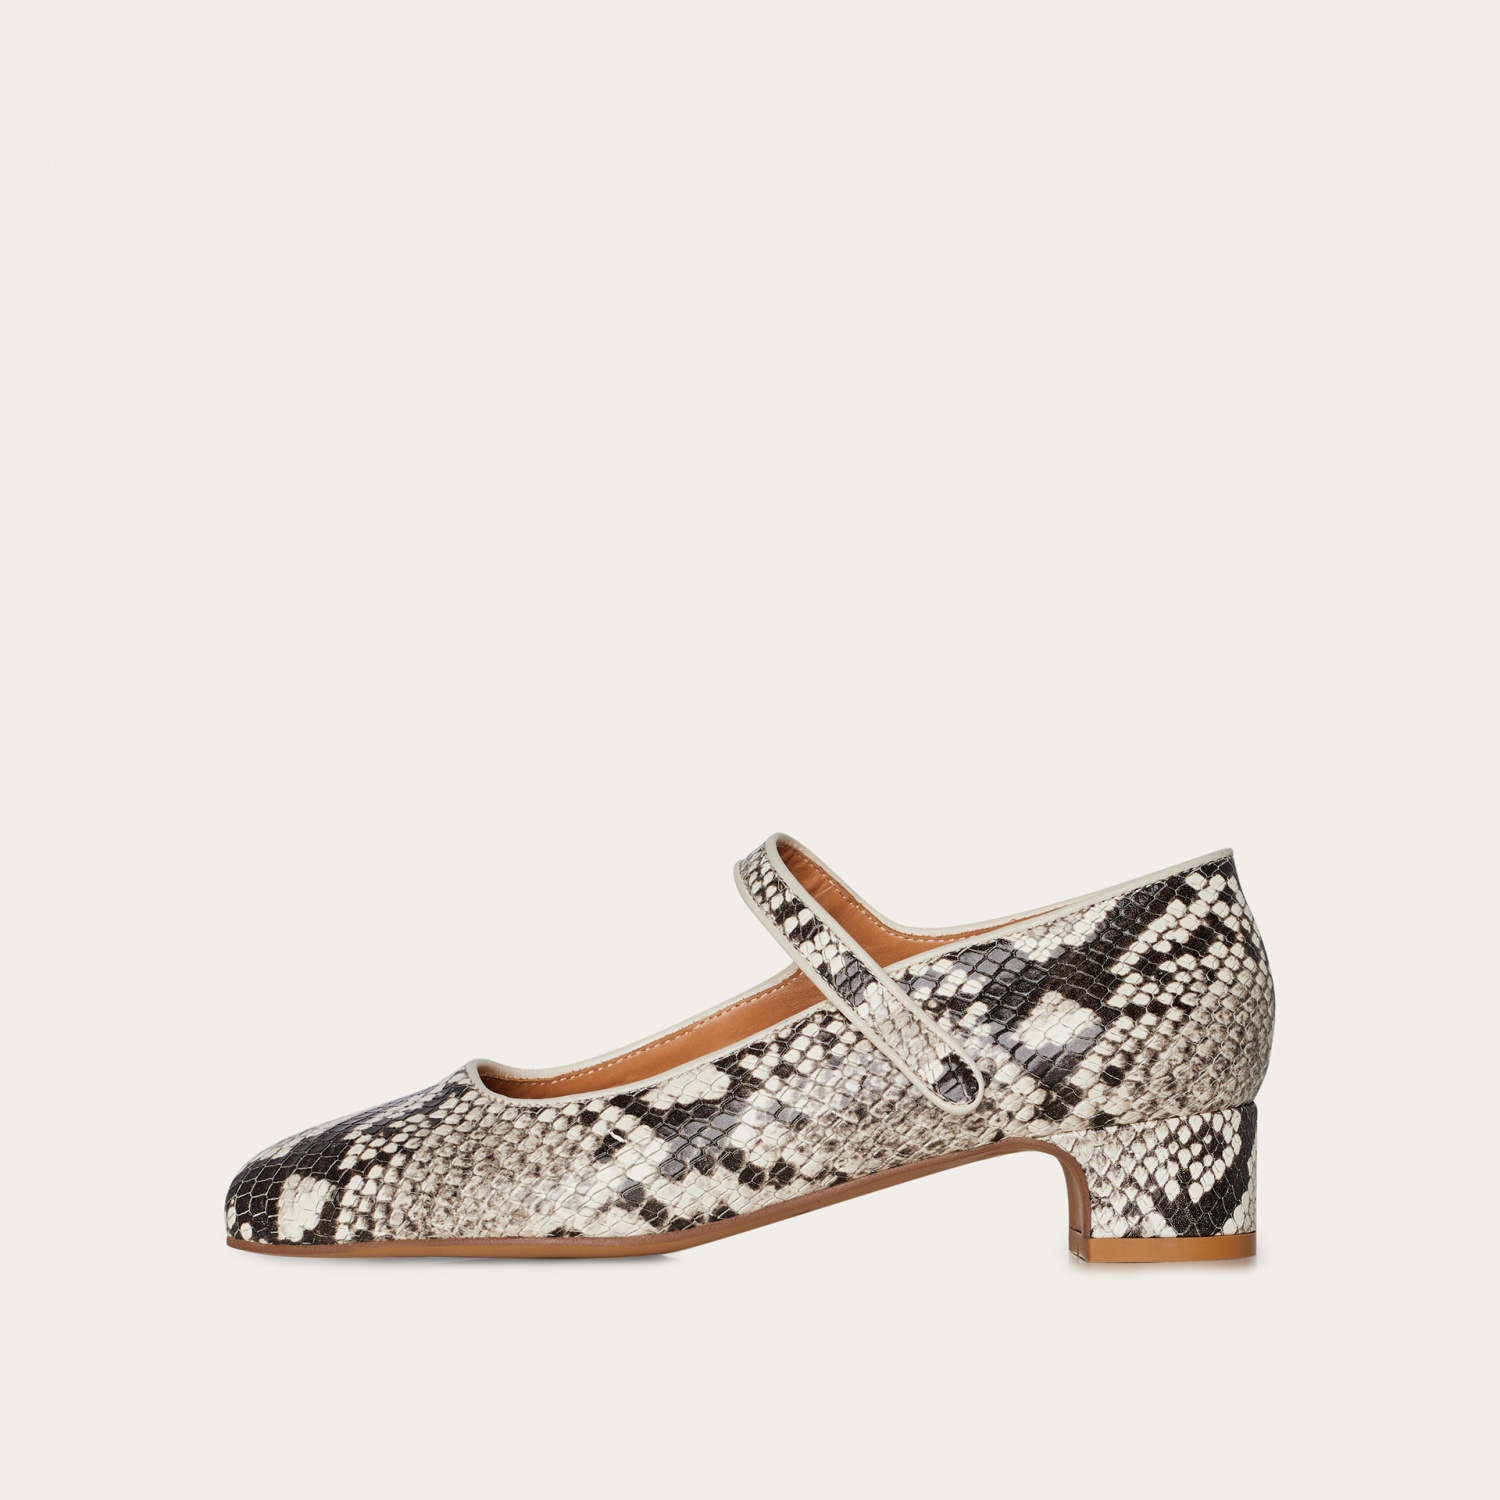  Dora Low Heels, off white python pattern-7 